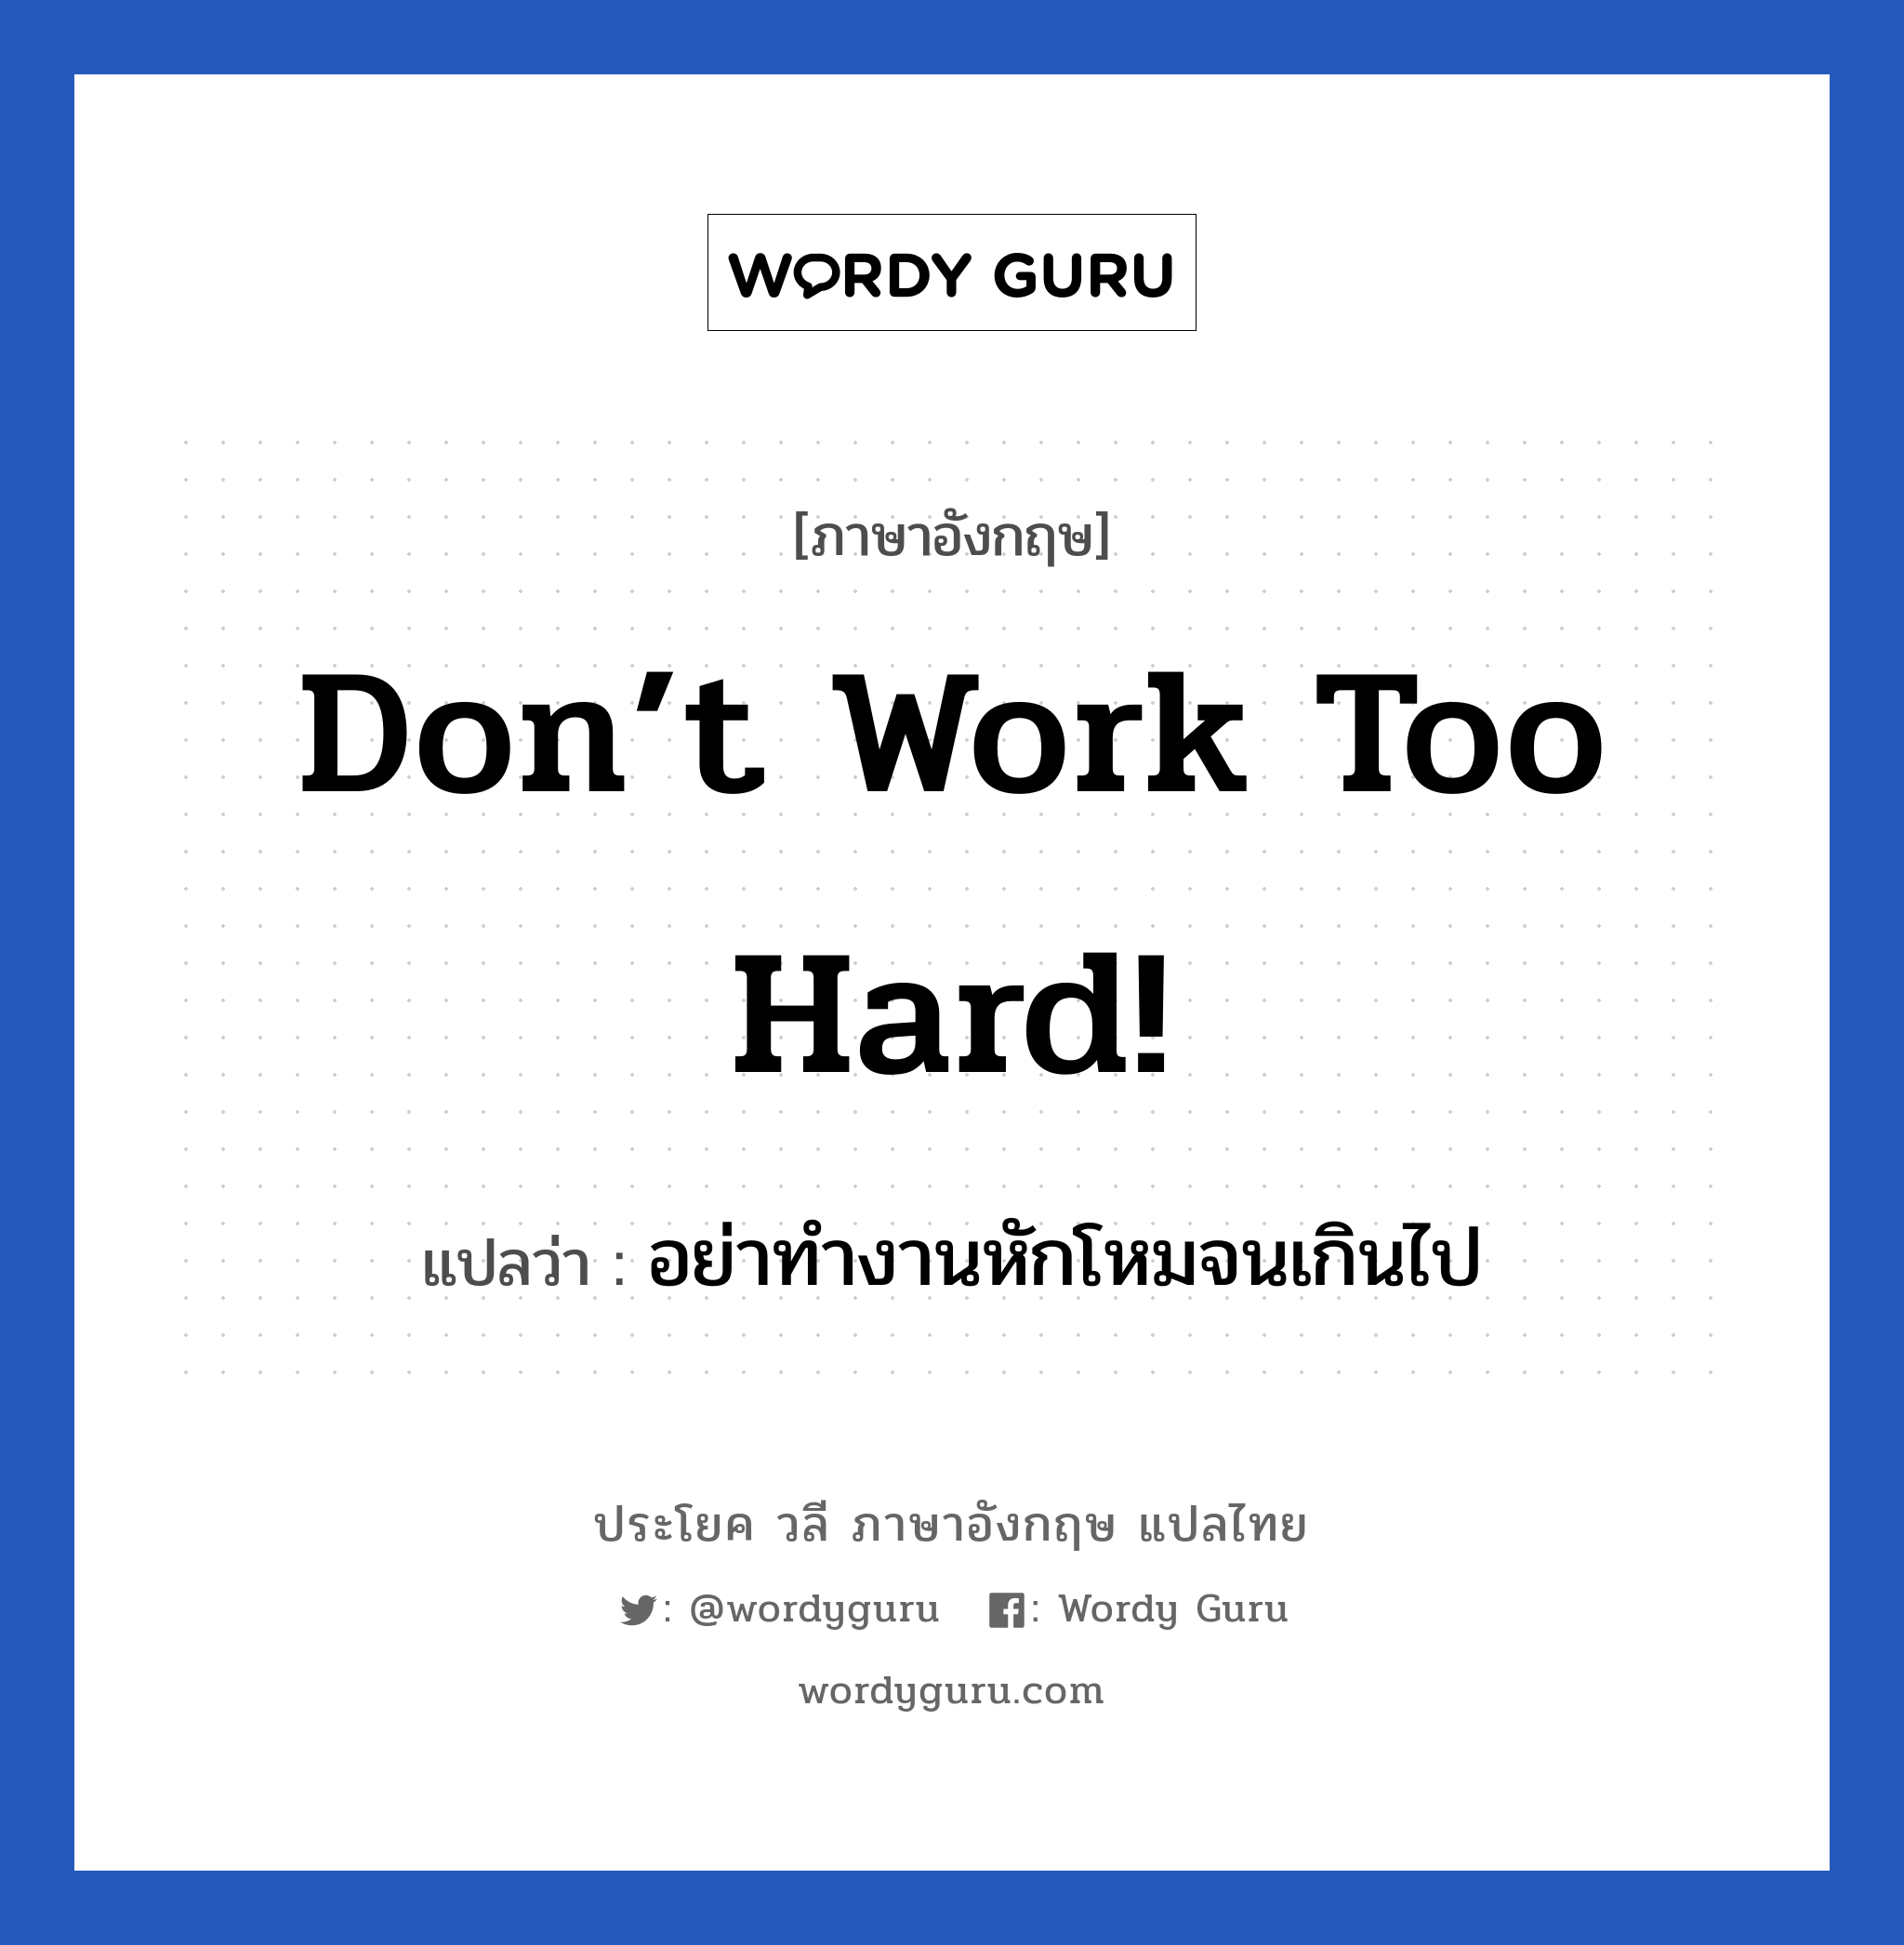 อย่าทำงานหักโหมจนเกินไป ภาษาอังกฤษ?, วลีภาษาอังกฤษ อย่าทำงานหักโหมจนเกินไป แปลว่า Don’t work too hard! หมวด เป็นห่วง